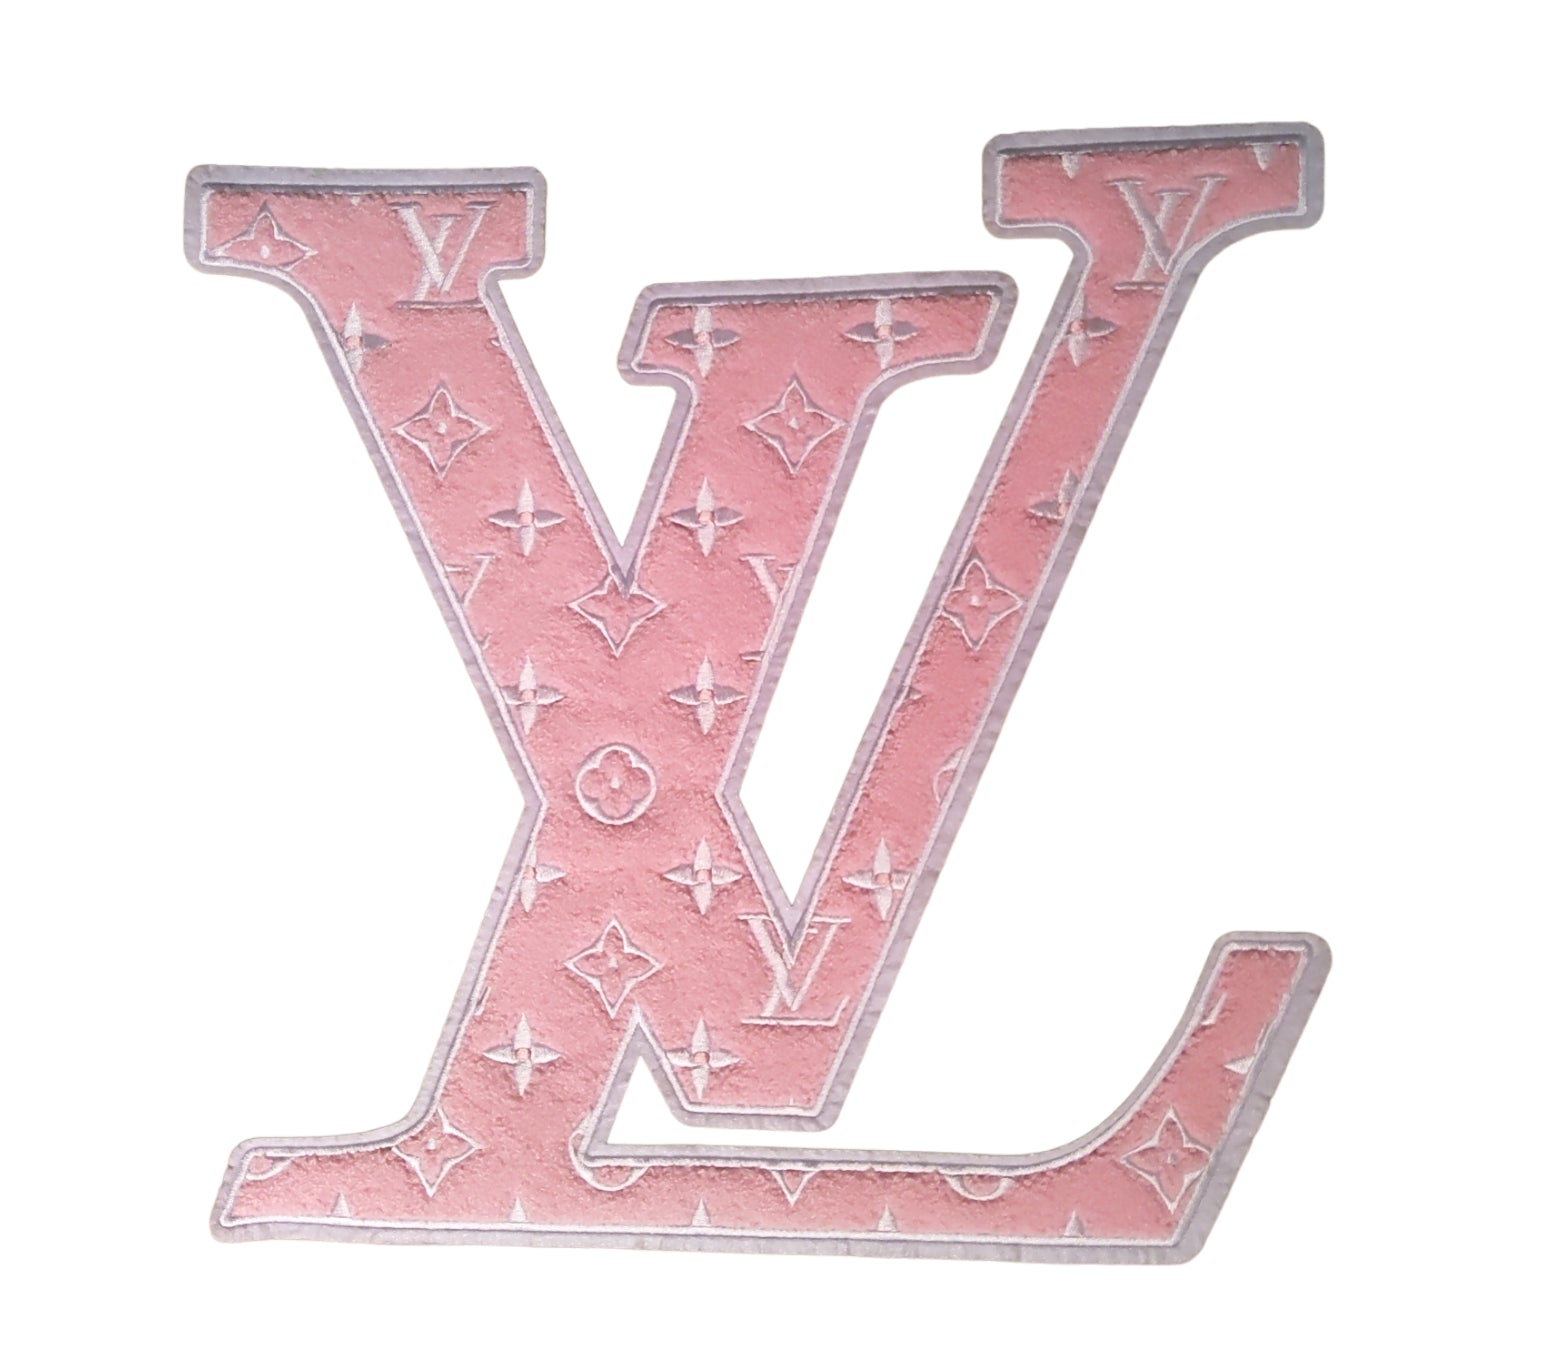 Louis Vuitton Patch 